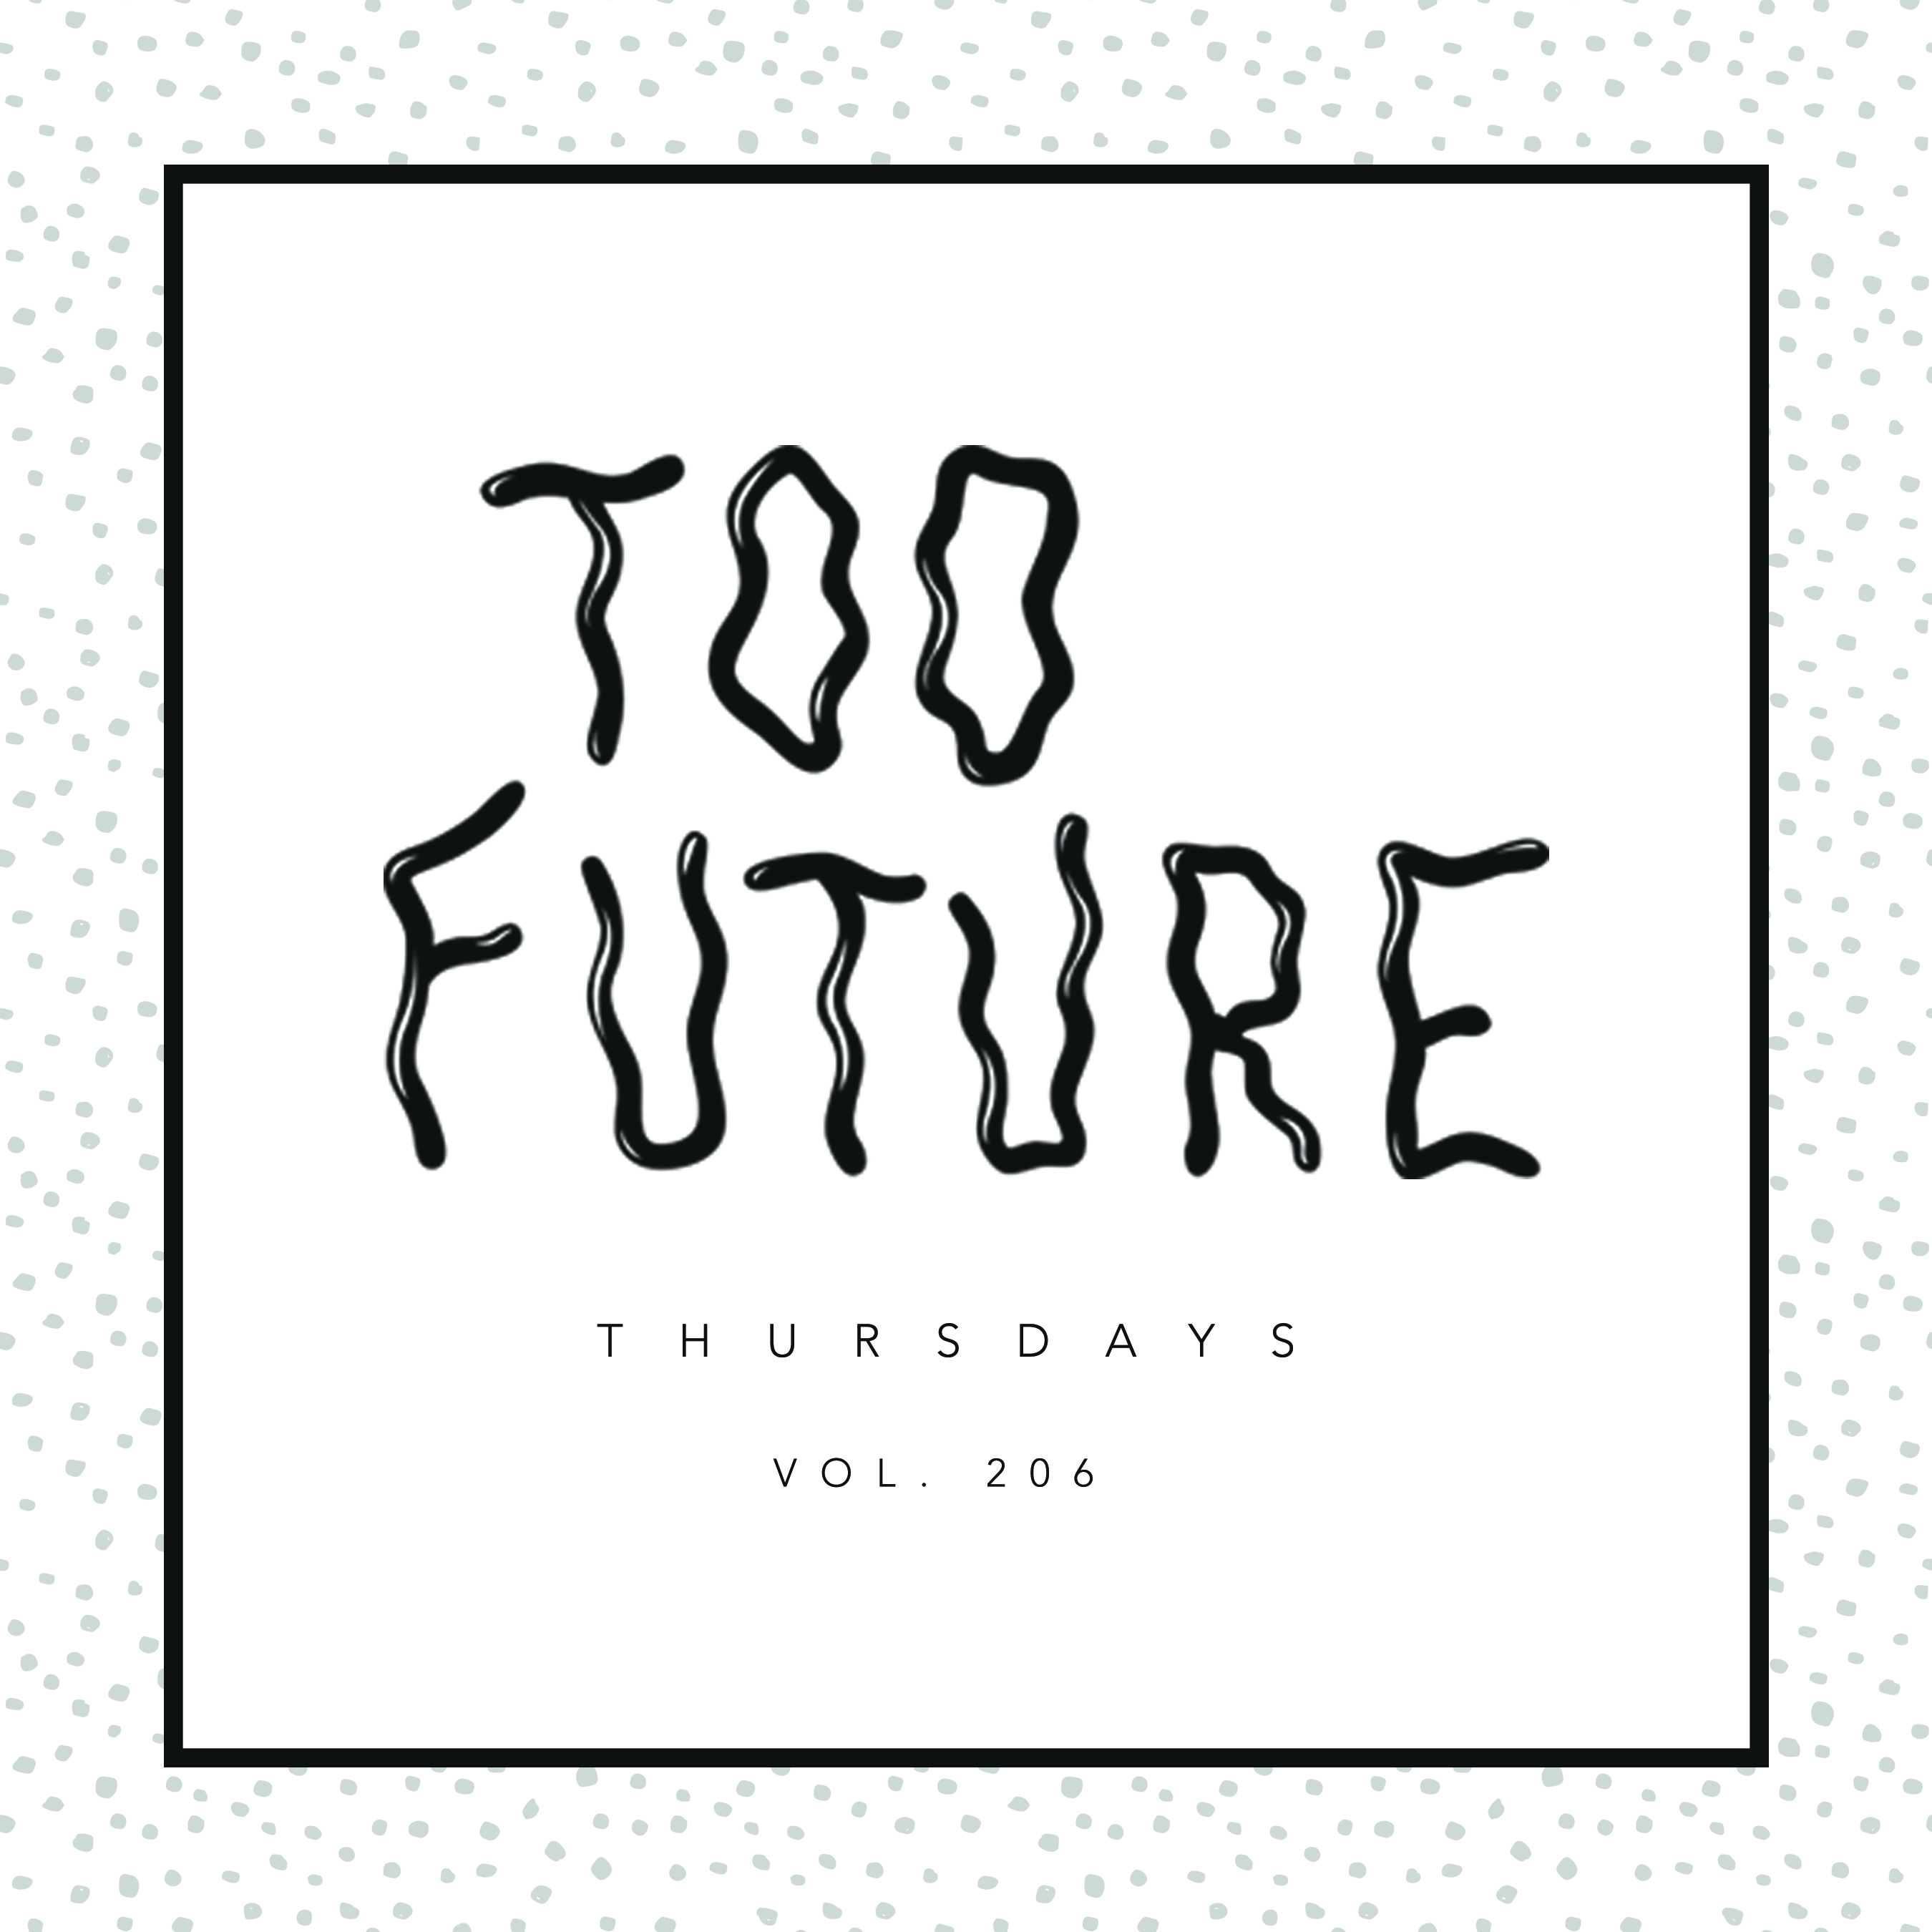 too-future-thursdays-vol-206